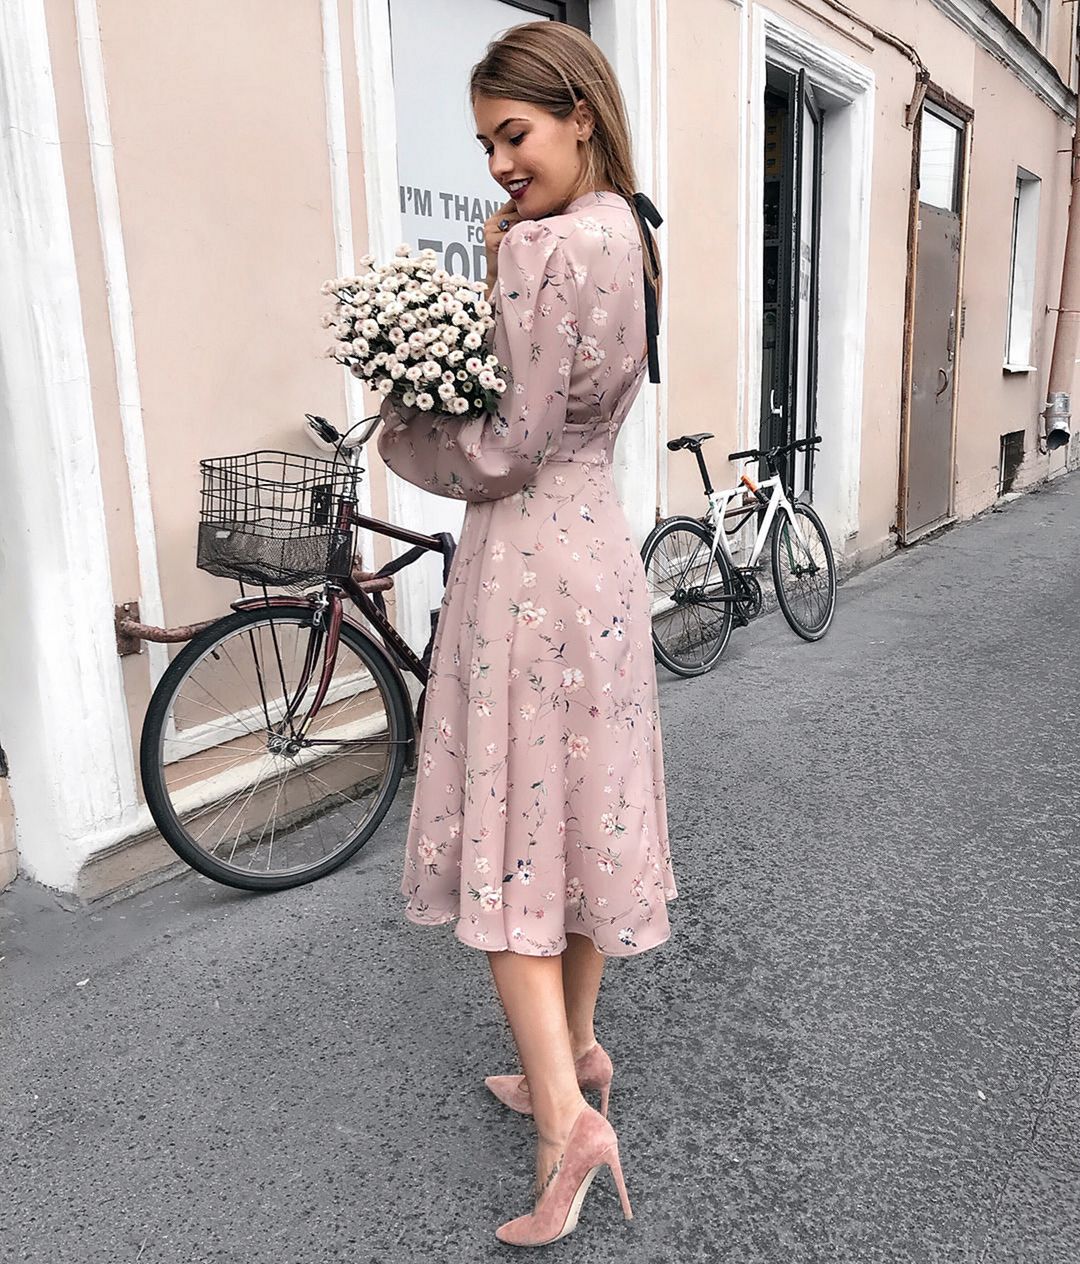 Mauve floral dress from larne_studio instagram